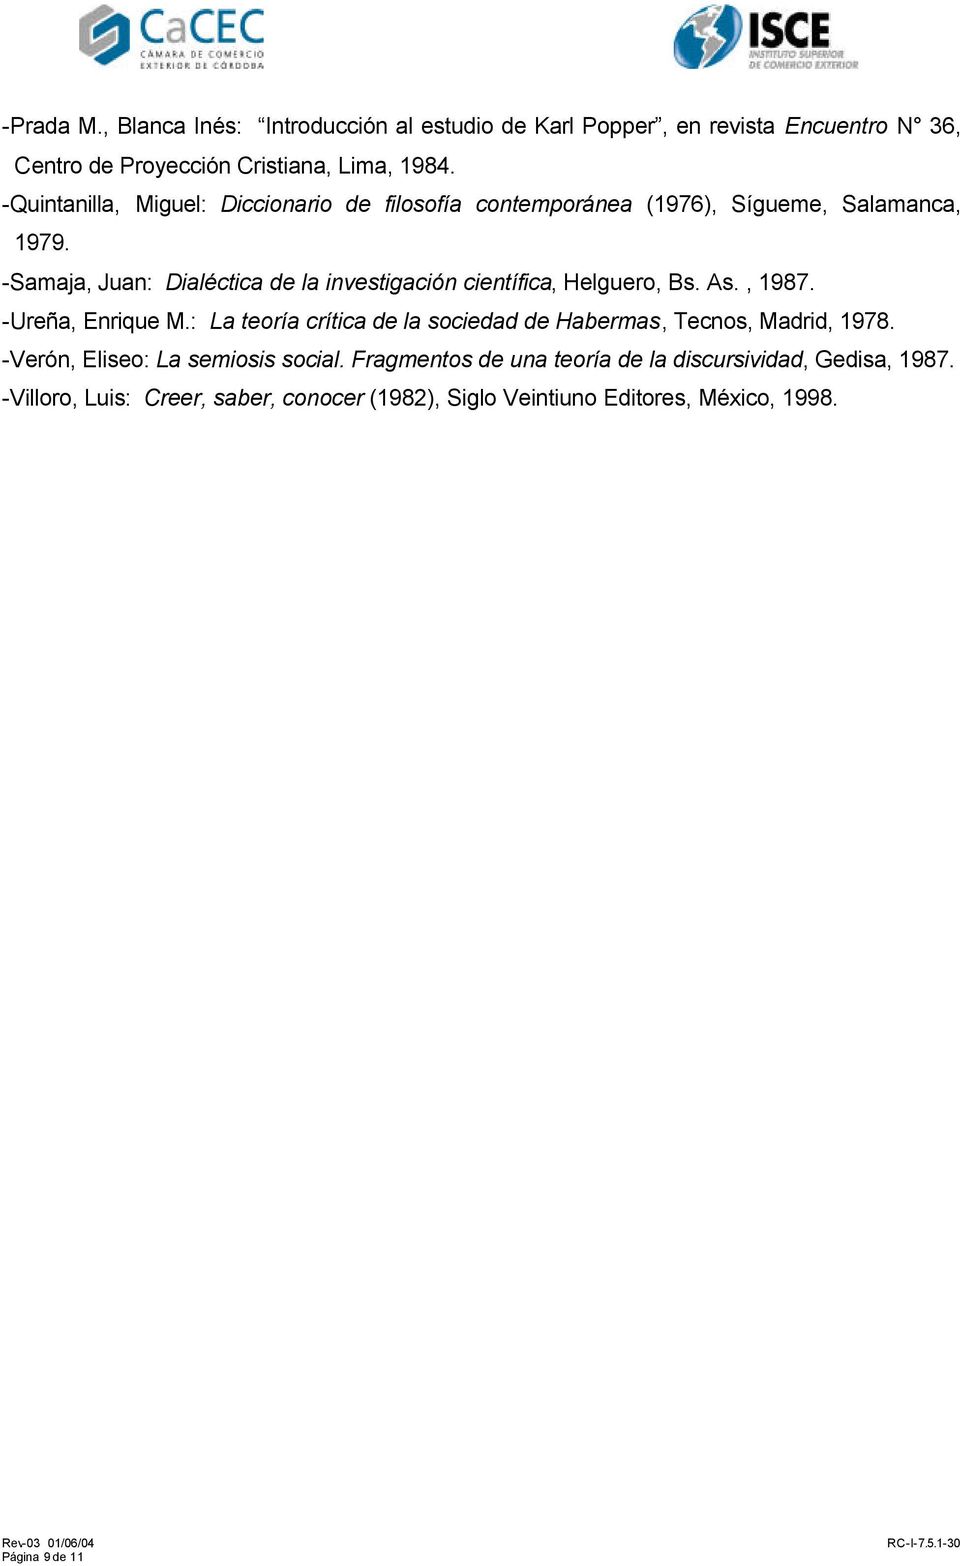 -Samaja, Juan: Dialéctica de la investigación científica, Helguero, Bs. As., 1987. -Ureña, Enrique M.